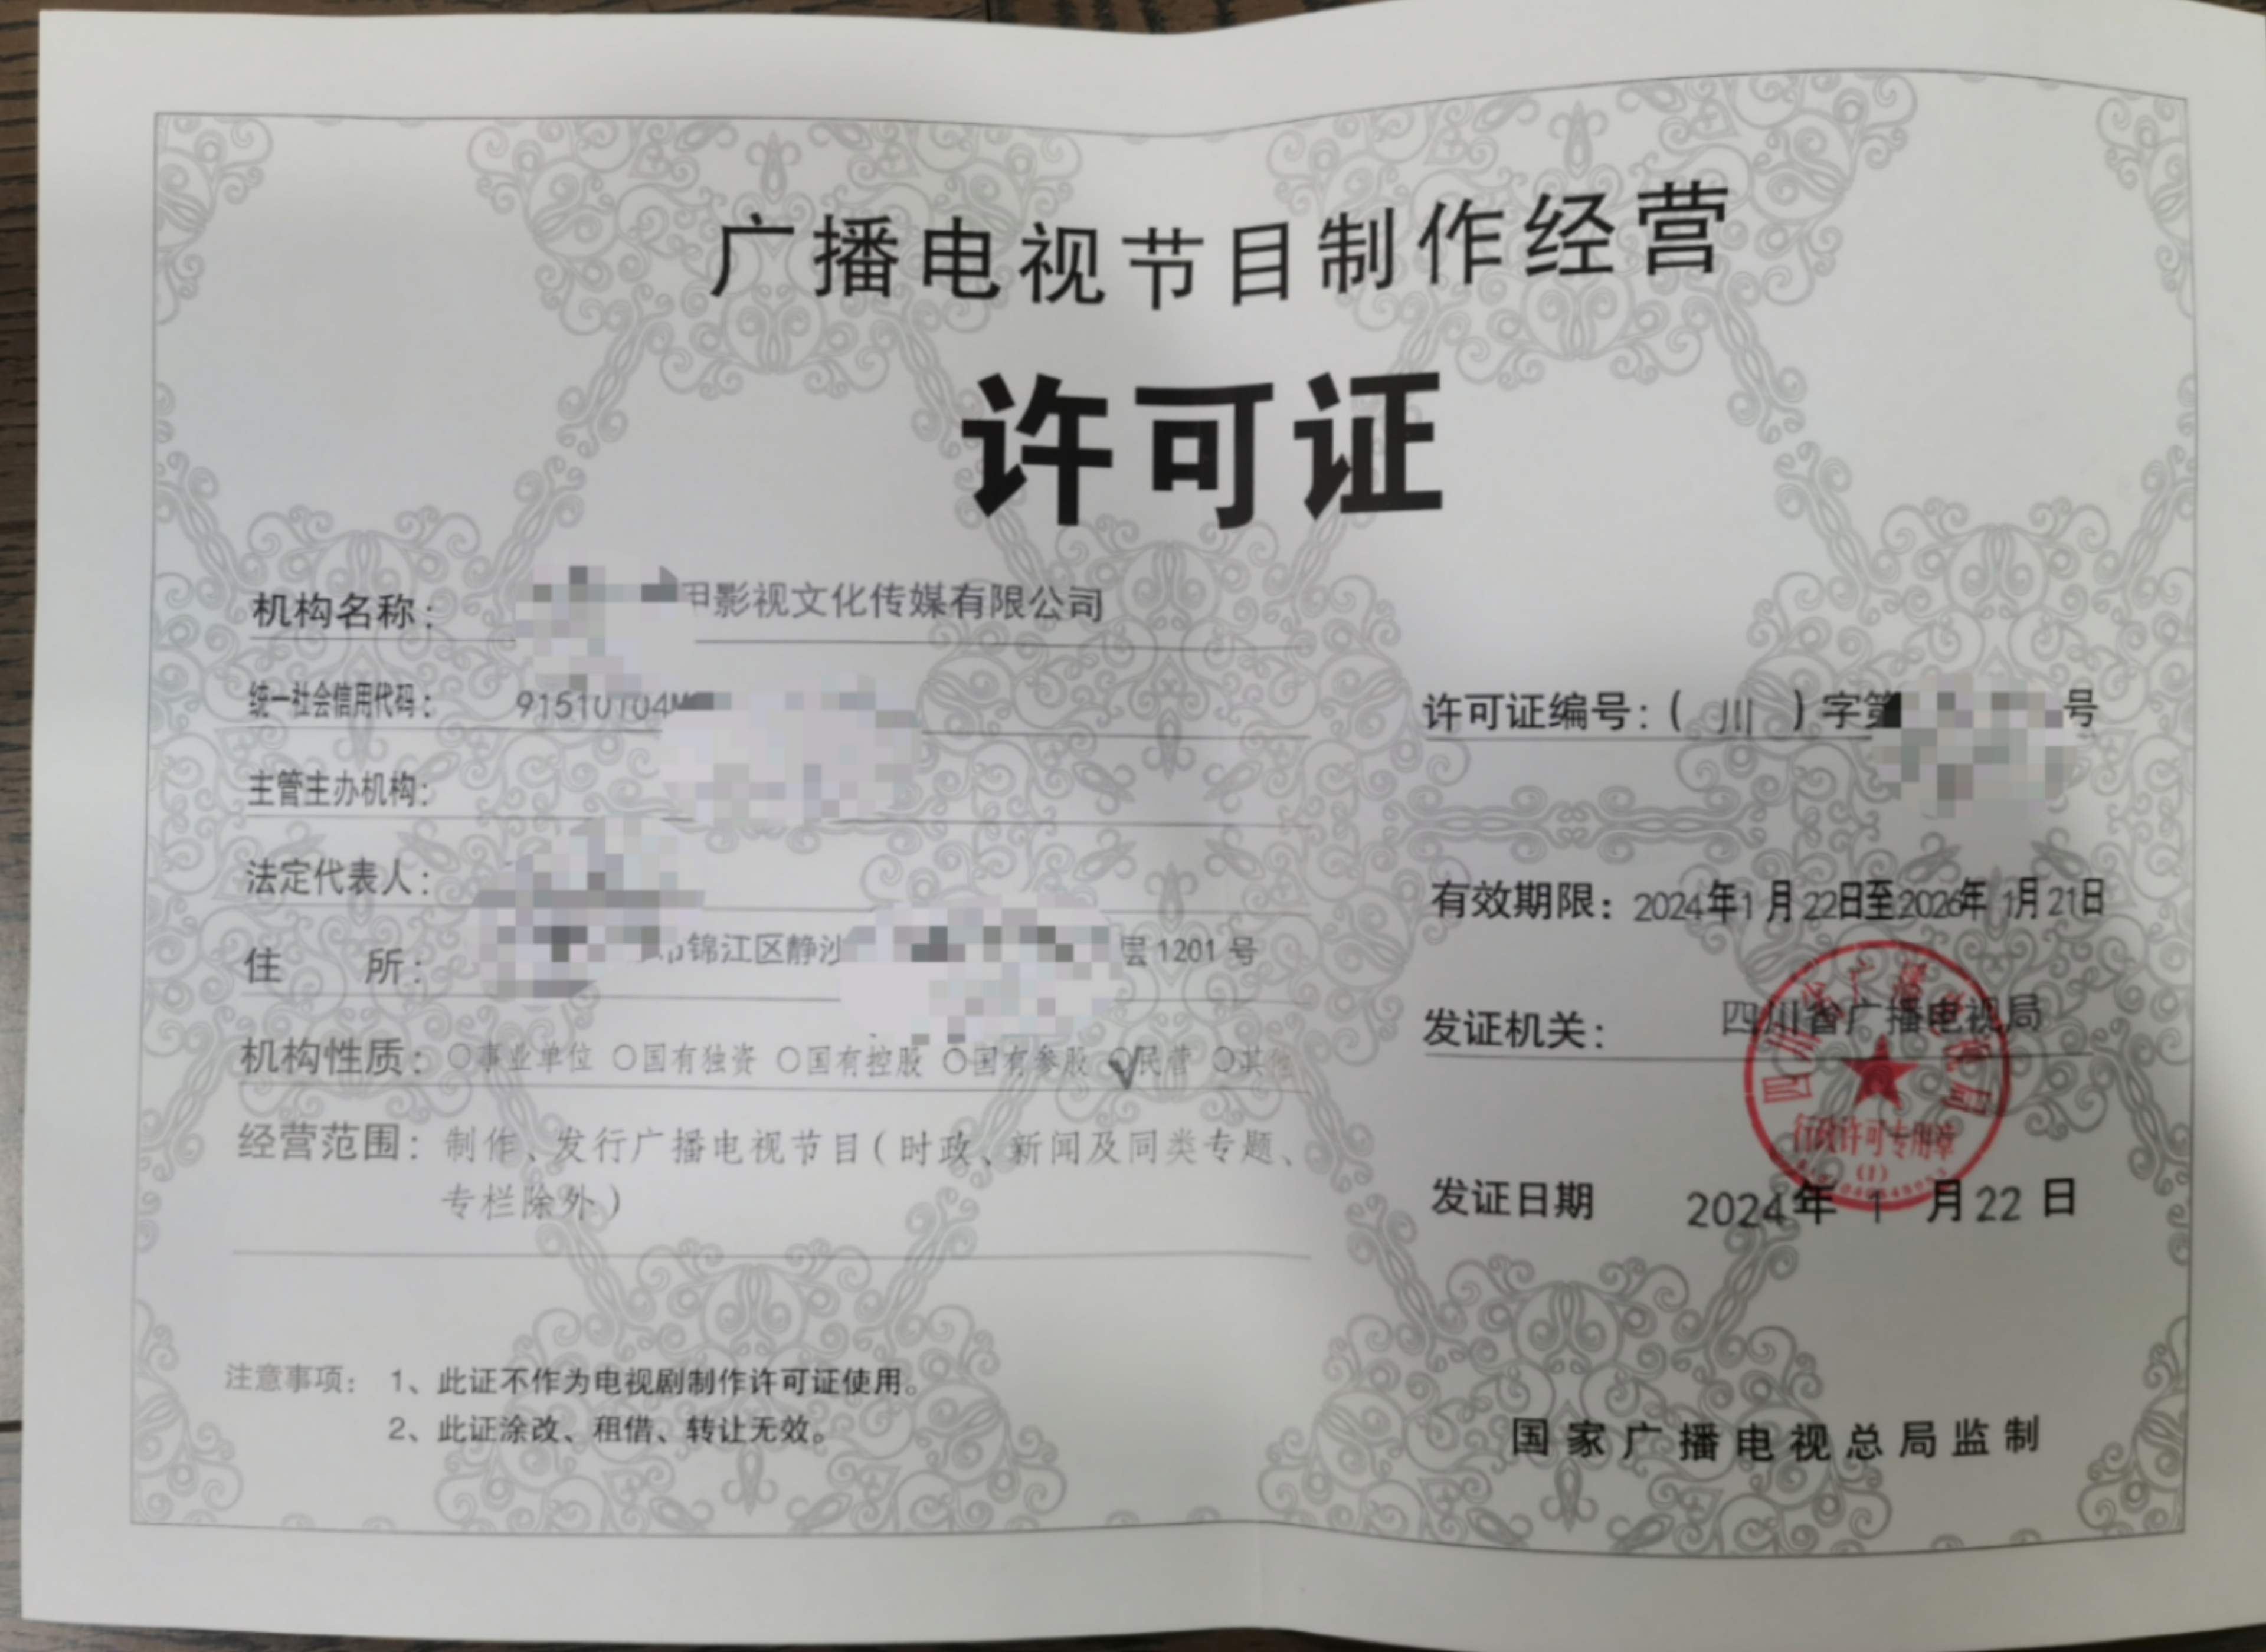 四川广电证怎么申请从事节目制作经营业务许可的